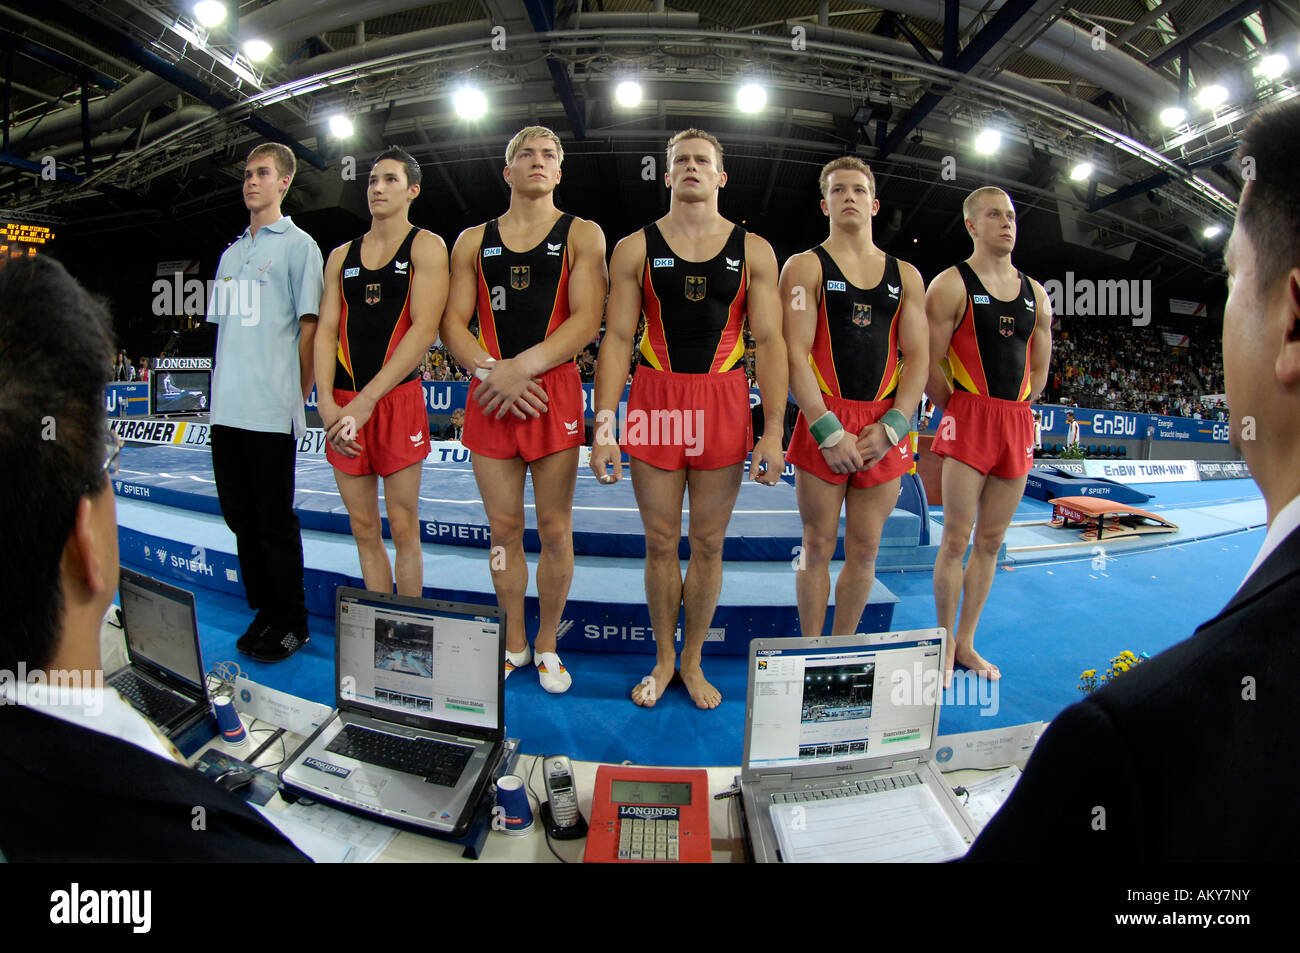 L'équipe de gymnaste allemand hommes en finale l'équipe de championnat du monde de gymnastique artistique 2007 STUTTGART Allemagne Banque D'Images